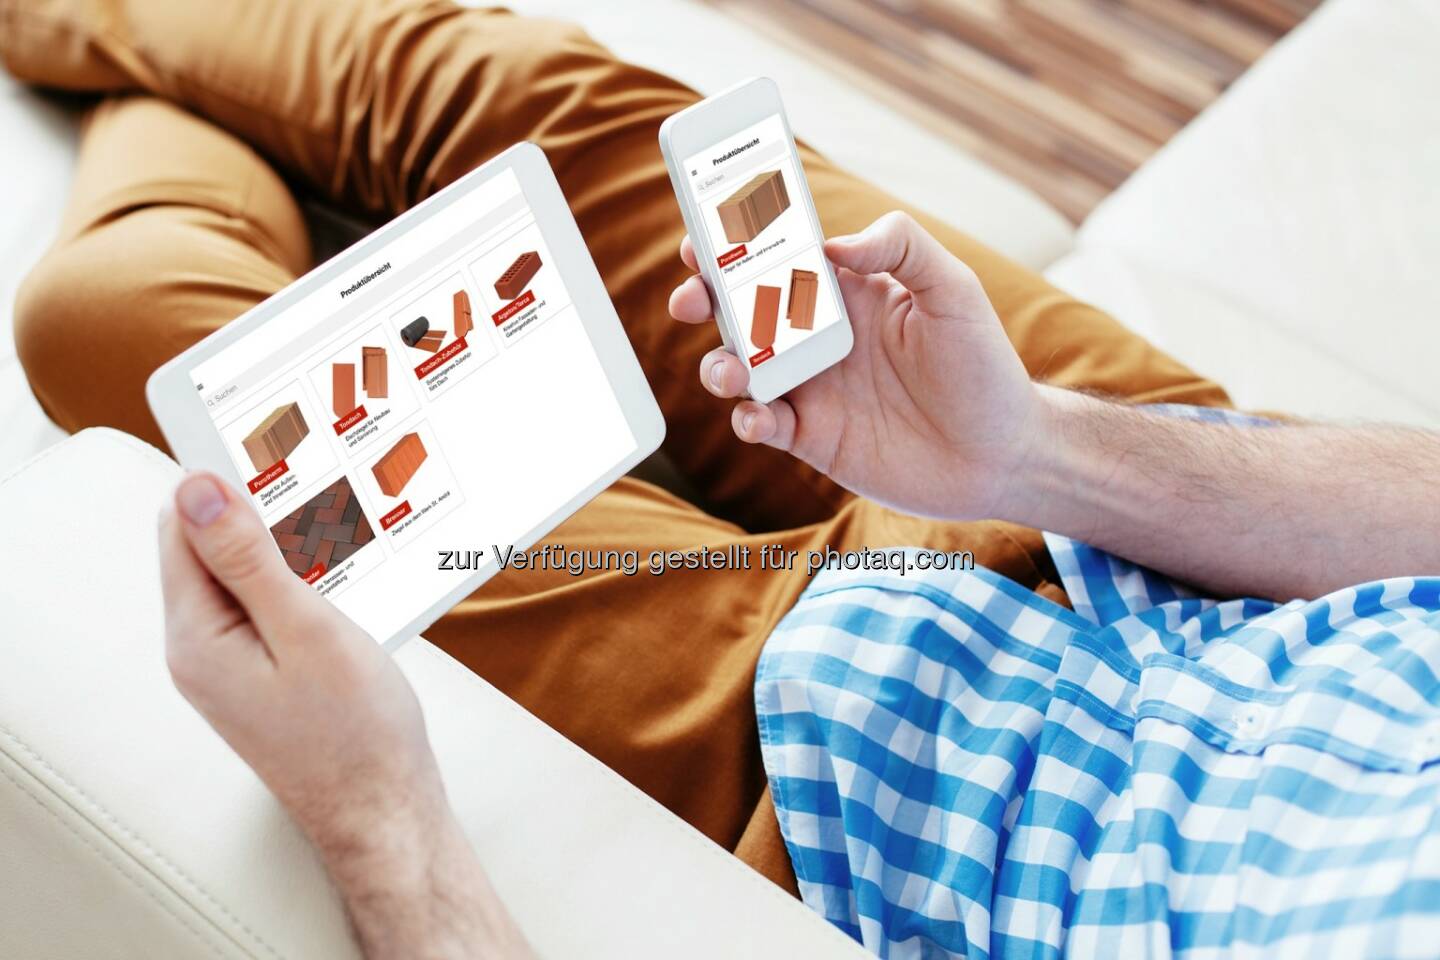 Kennst Du unsere Wienerberger Produktfinder-App schon? Alle Details, Videos und tolle Referenzen für Smartphone und Tablet auf einen Klick.   Source: http://facebook.com/wienerberger